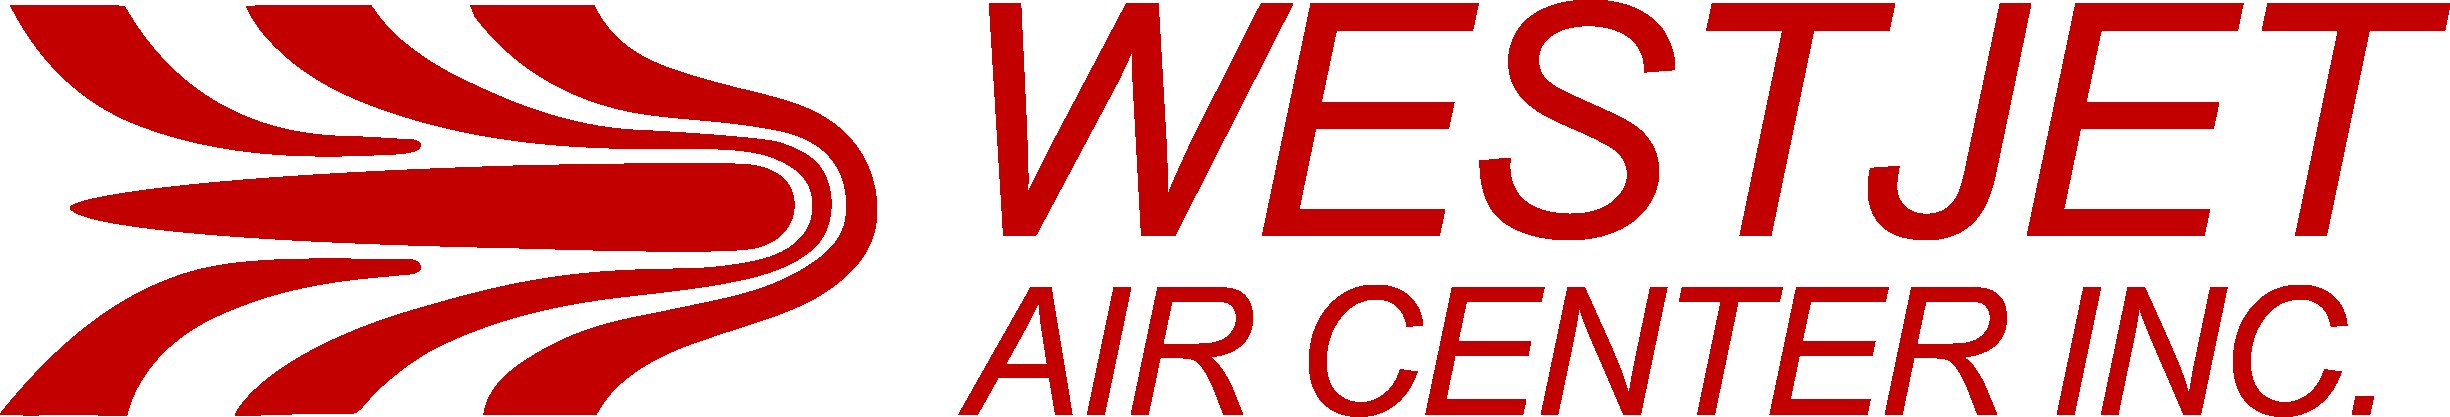 Logo Westjet Air Center.jpg